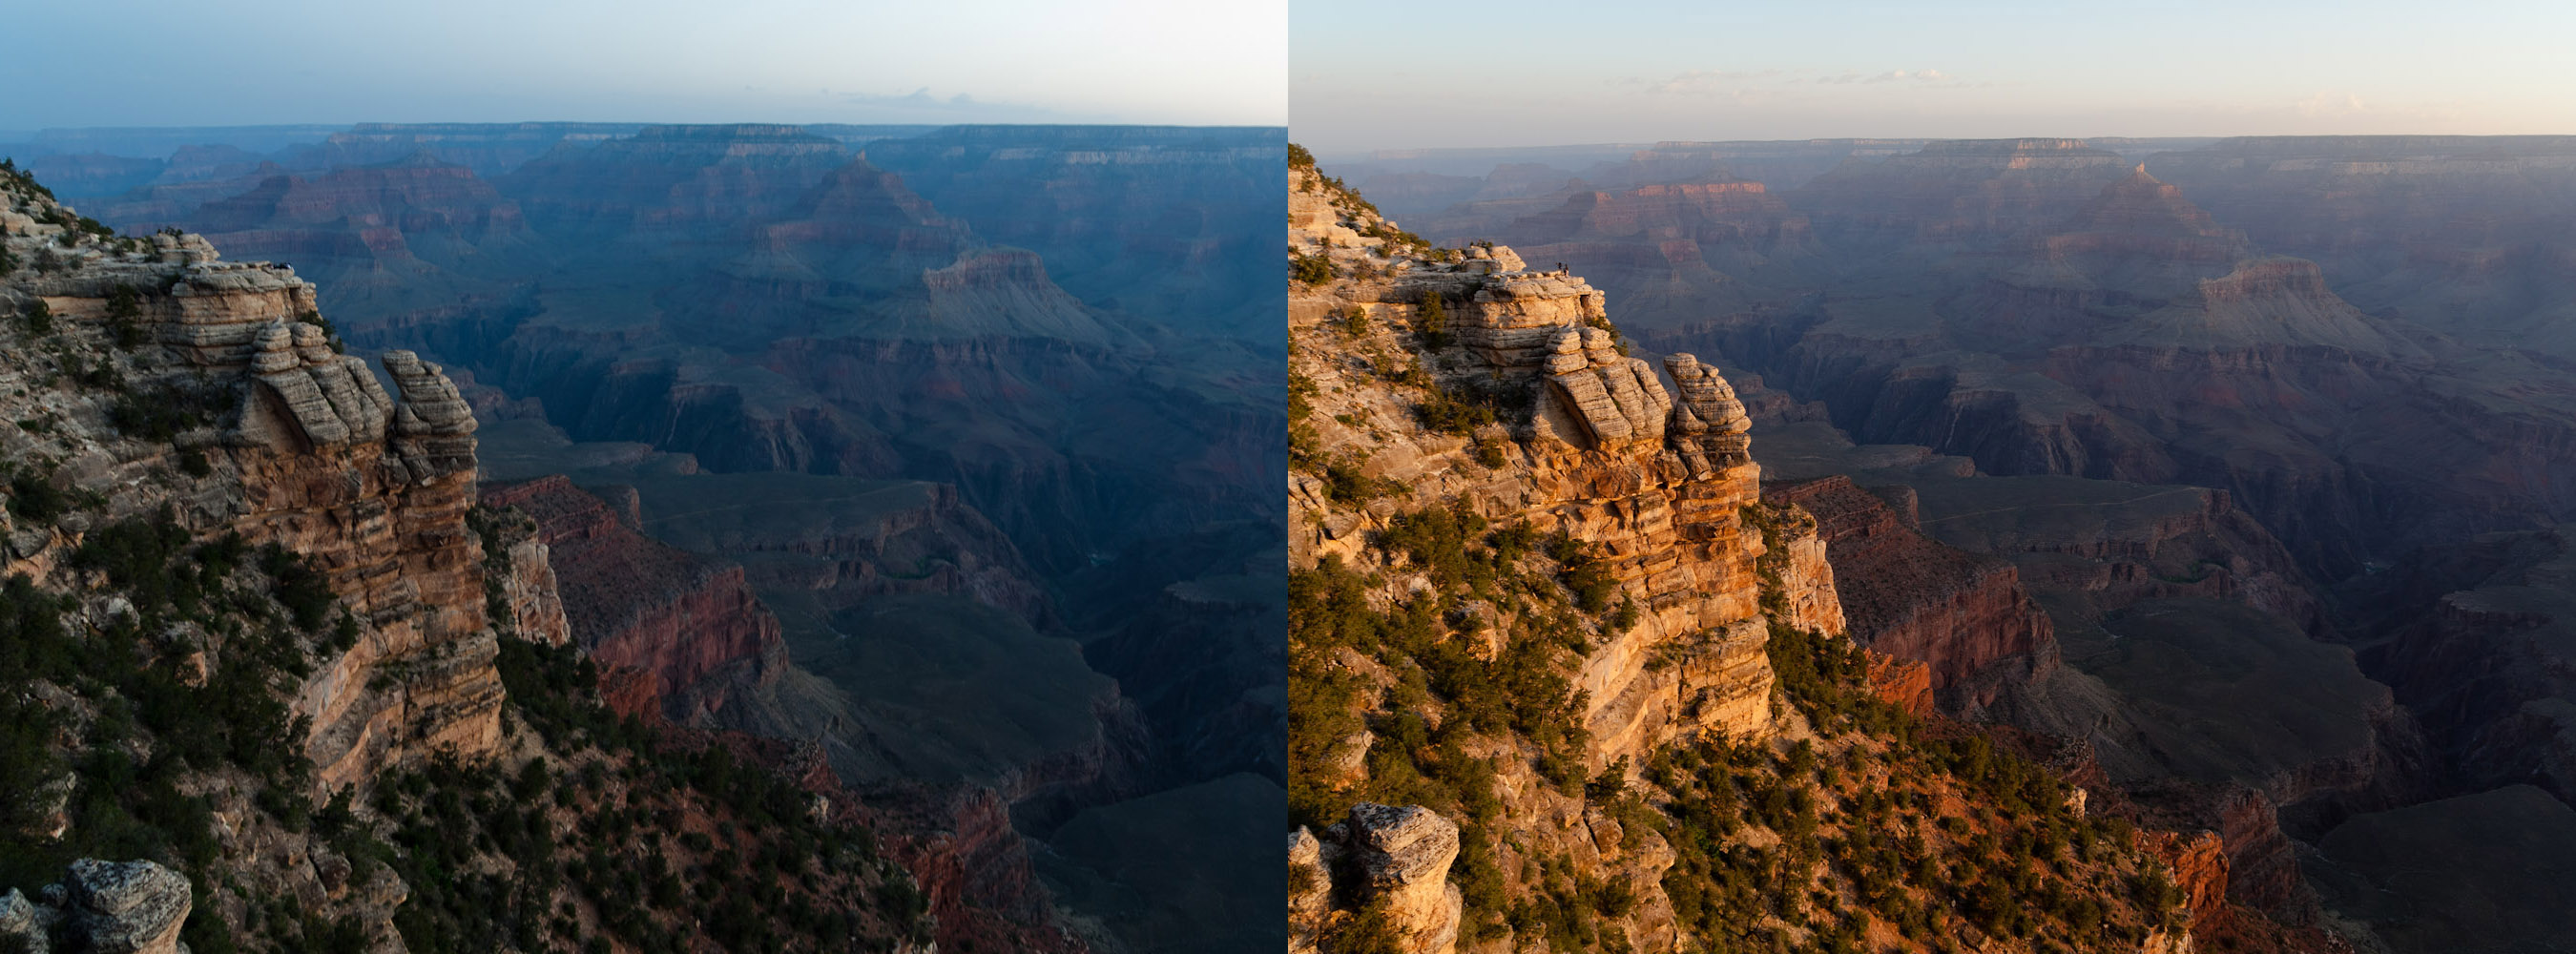 El Gran Cañón despierta: antes y después de la salida del sol